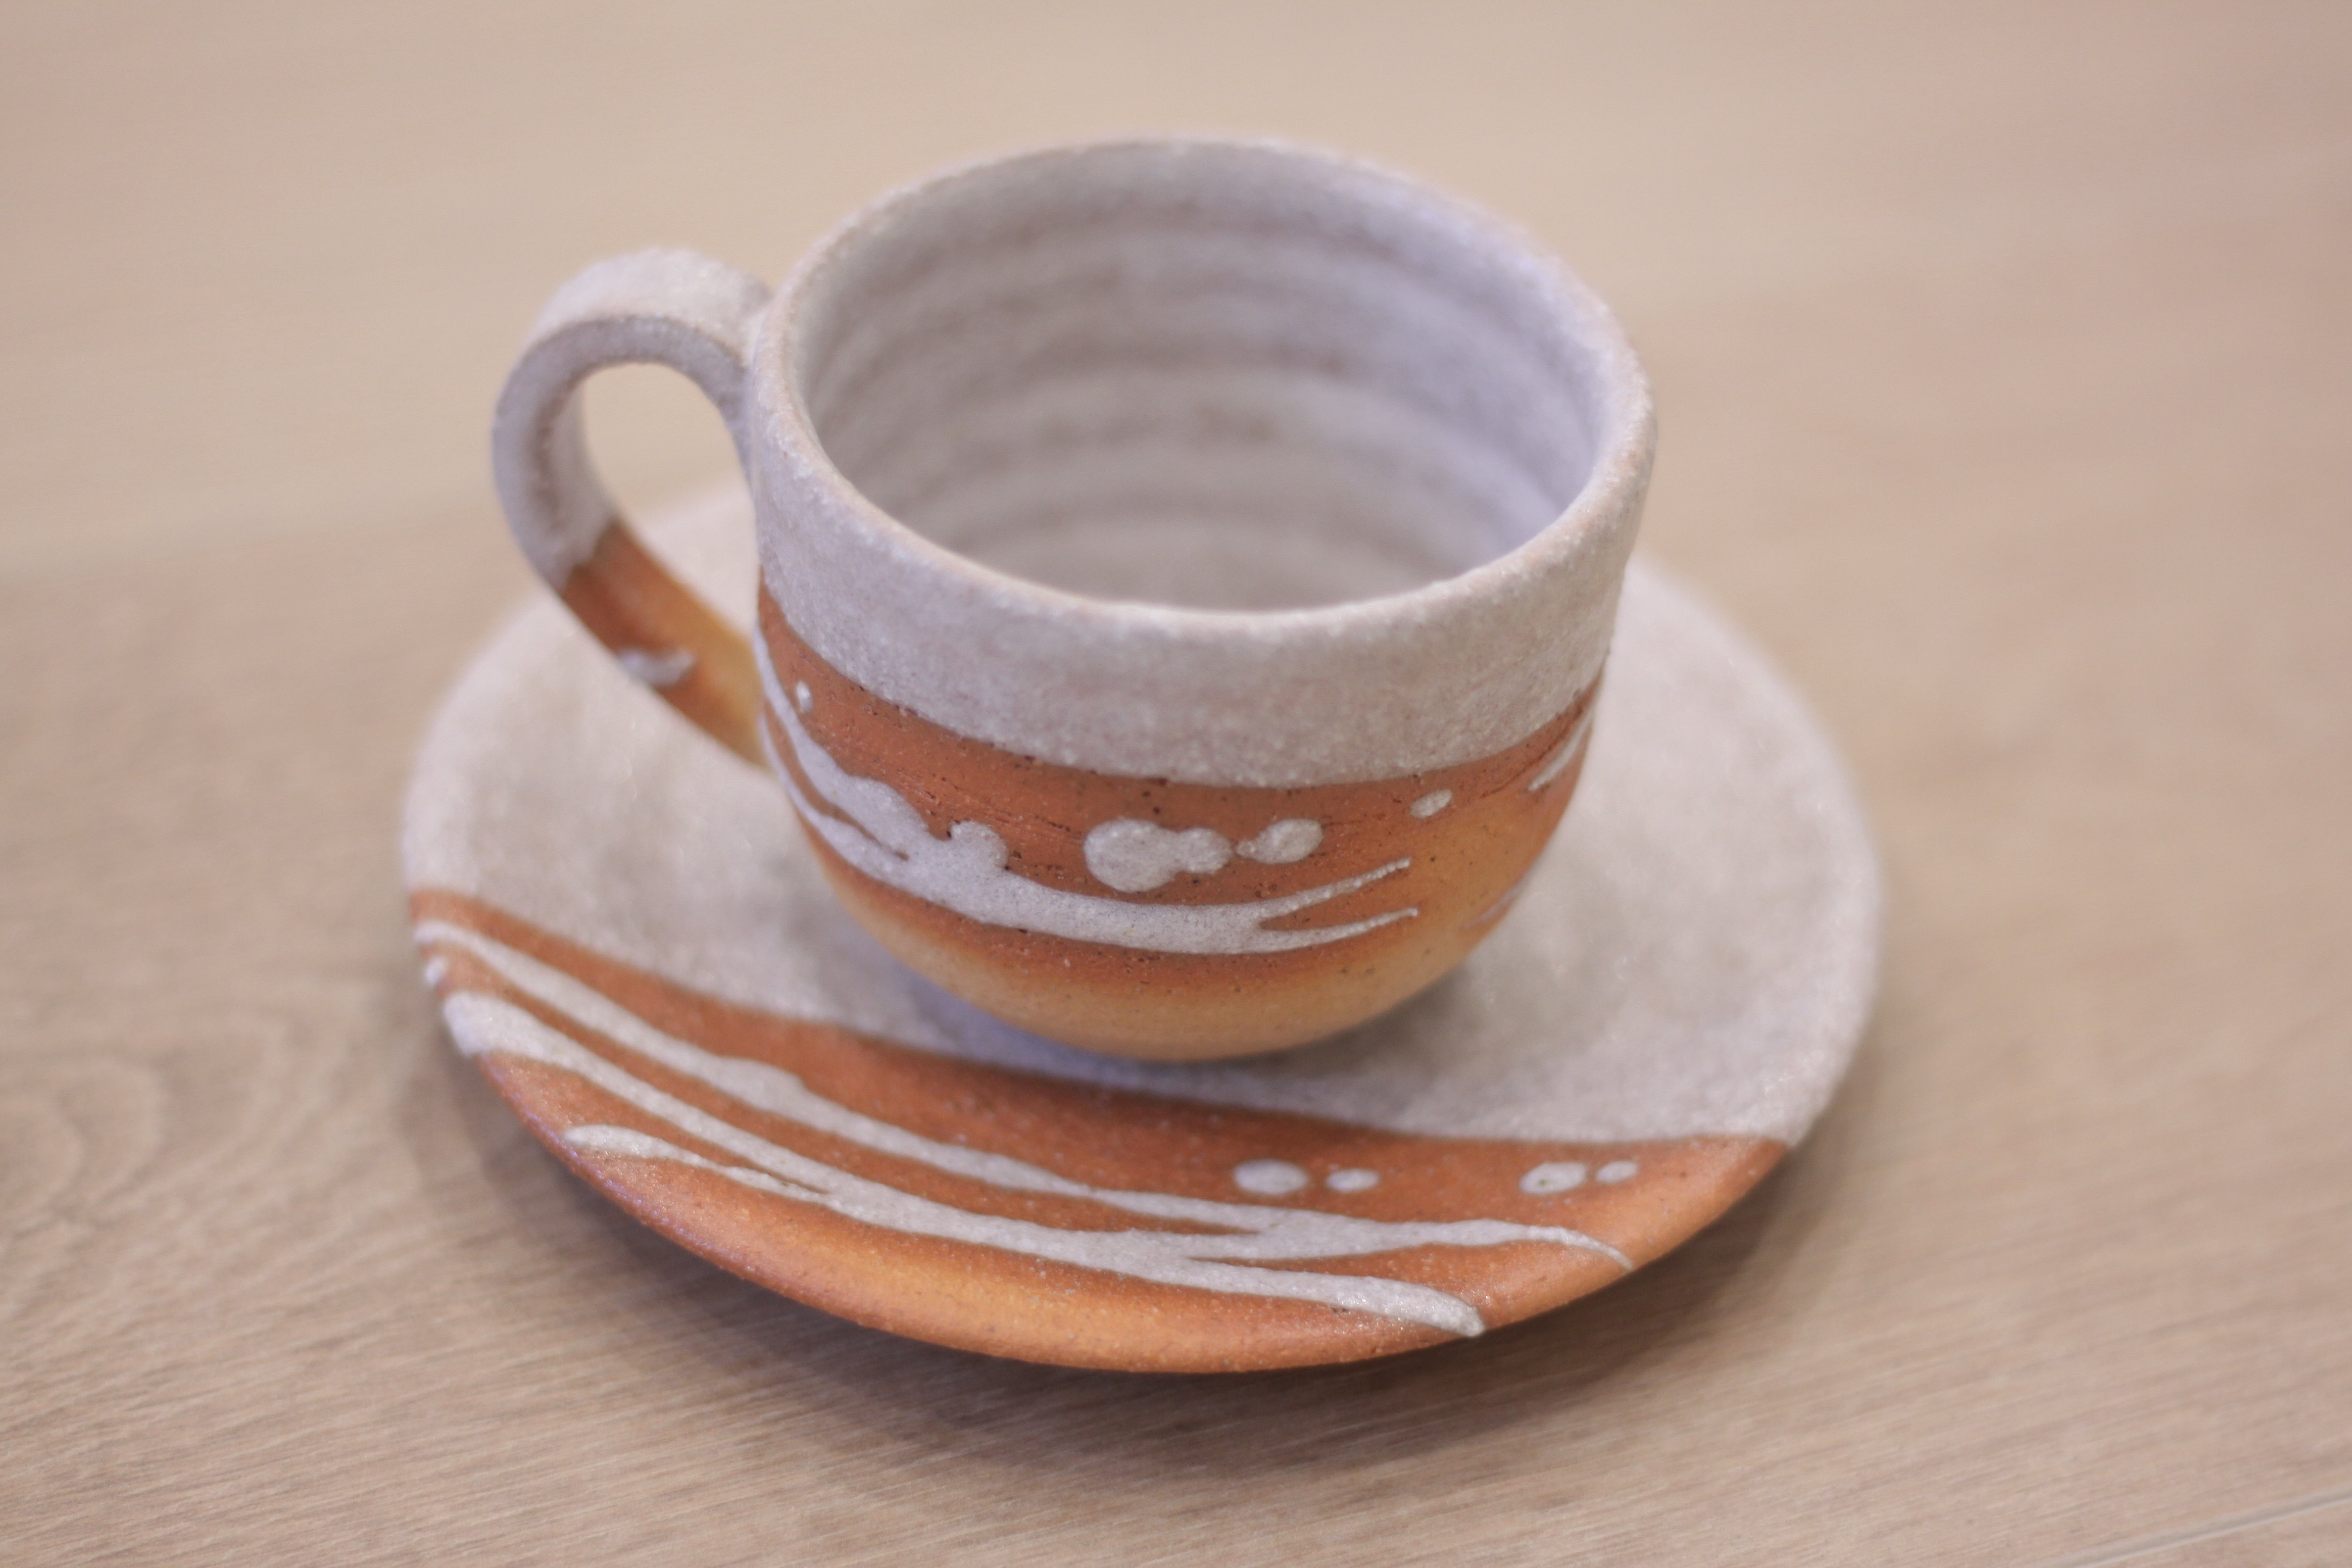 Hechimon Shigaraki Cup & Saucer - Caramel (Collector's Selection)